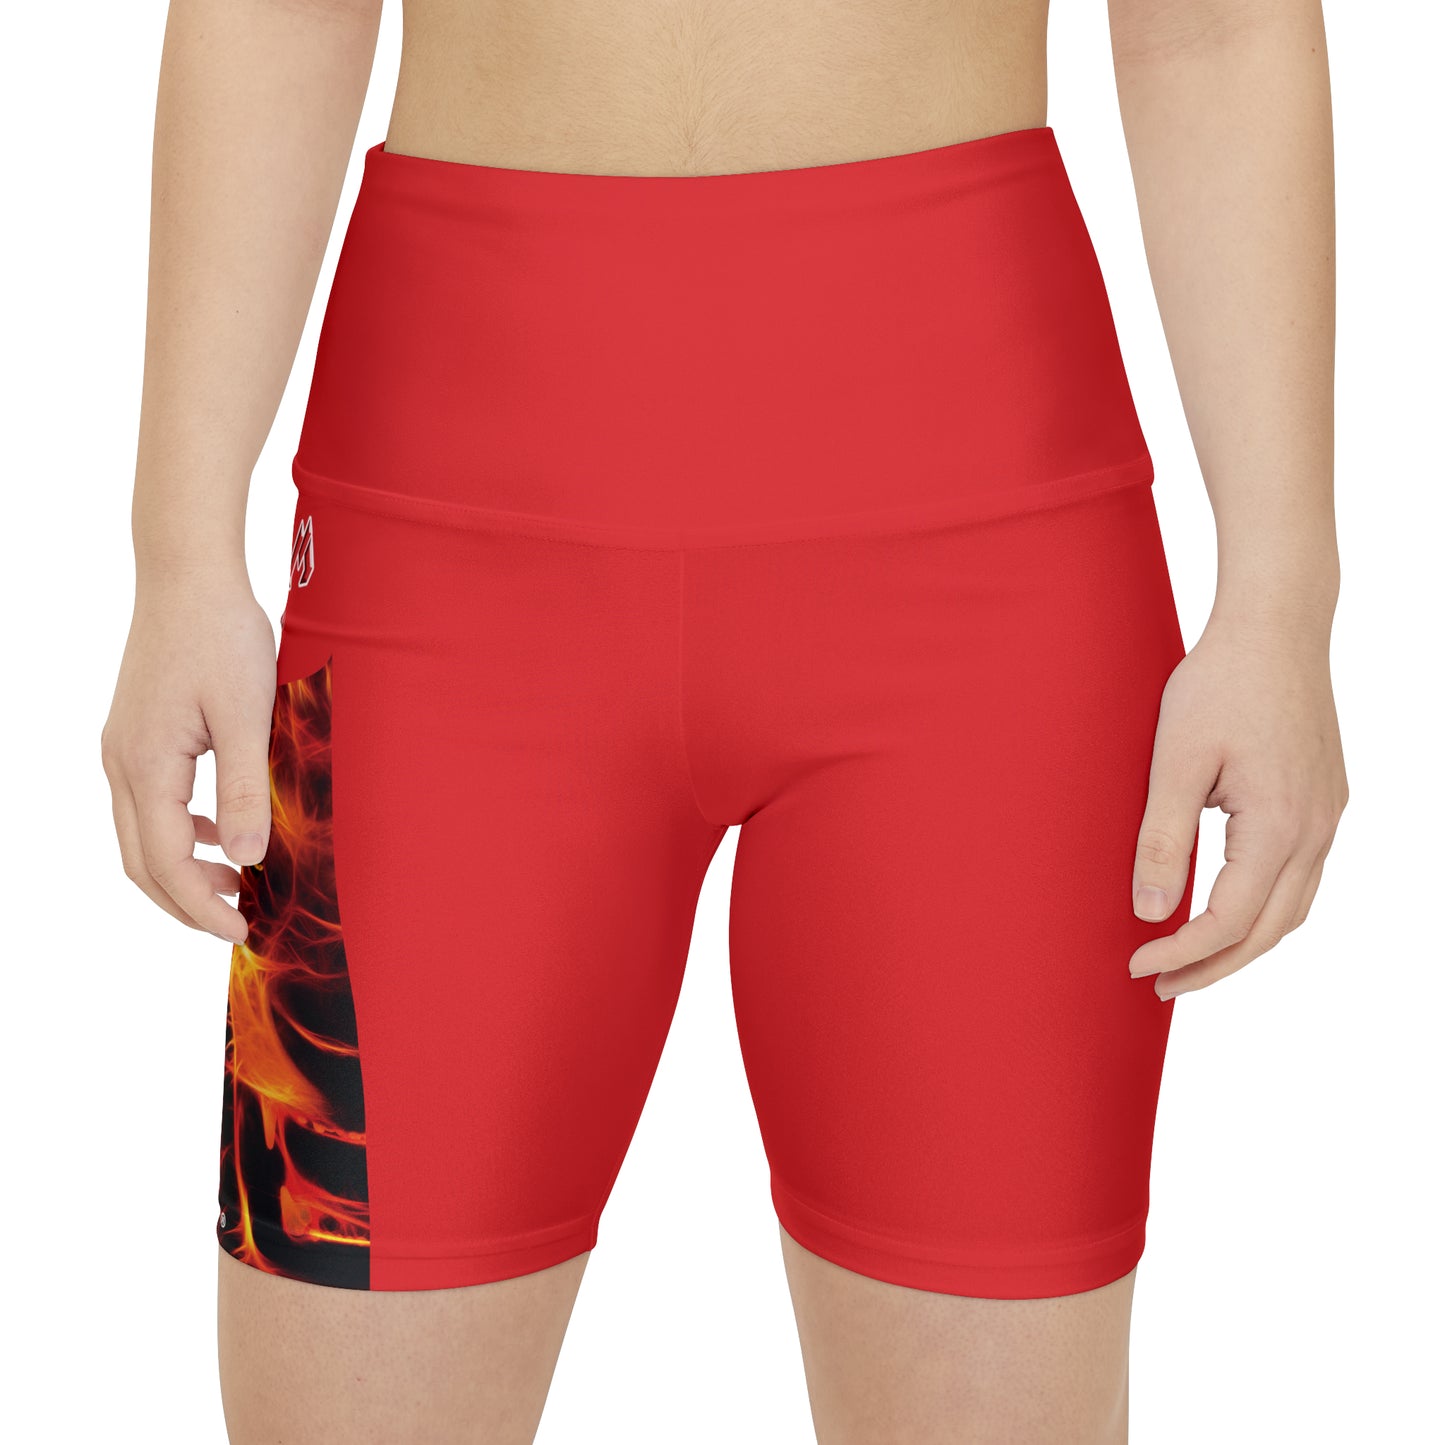 Premium Crap WorkoutWit Shorts - Red